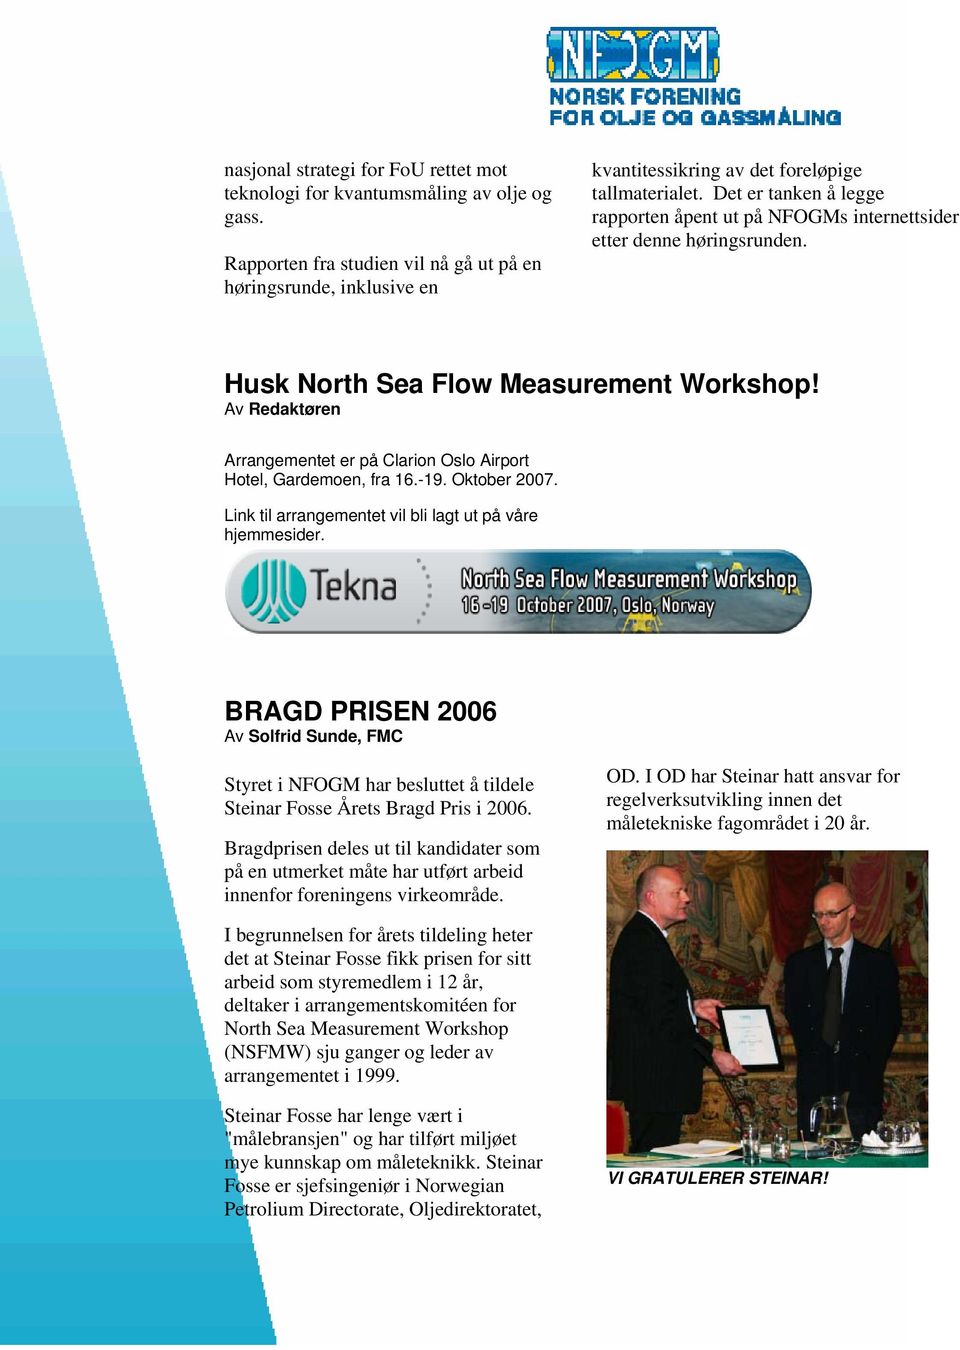 Det er tanken å legge rapporten åpent ut på NFOGMs internettsider etter denne høringsrunden. Husk North Sea Flow Measurement Workshop!